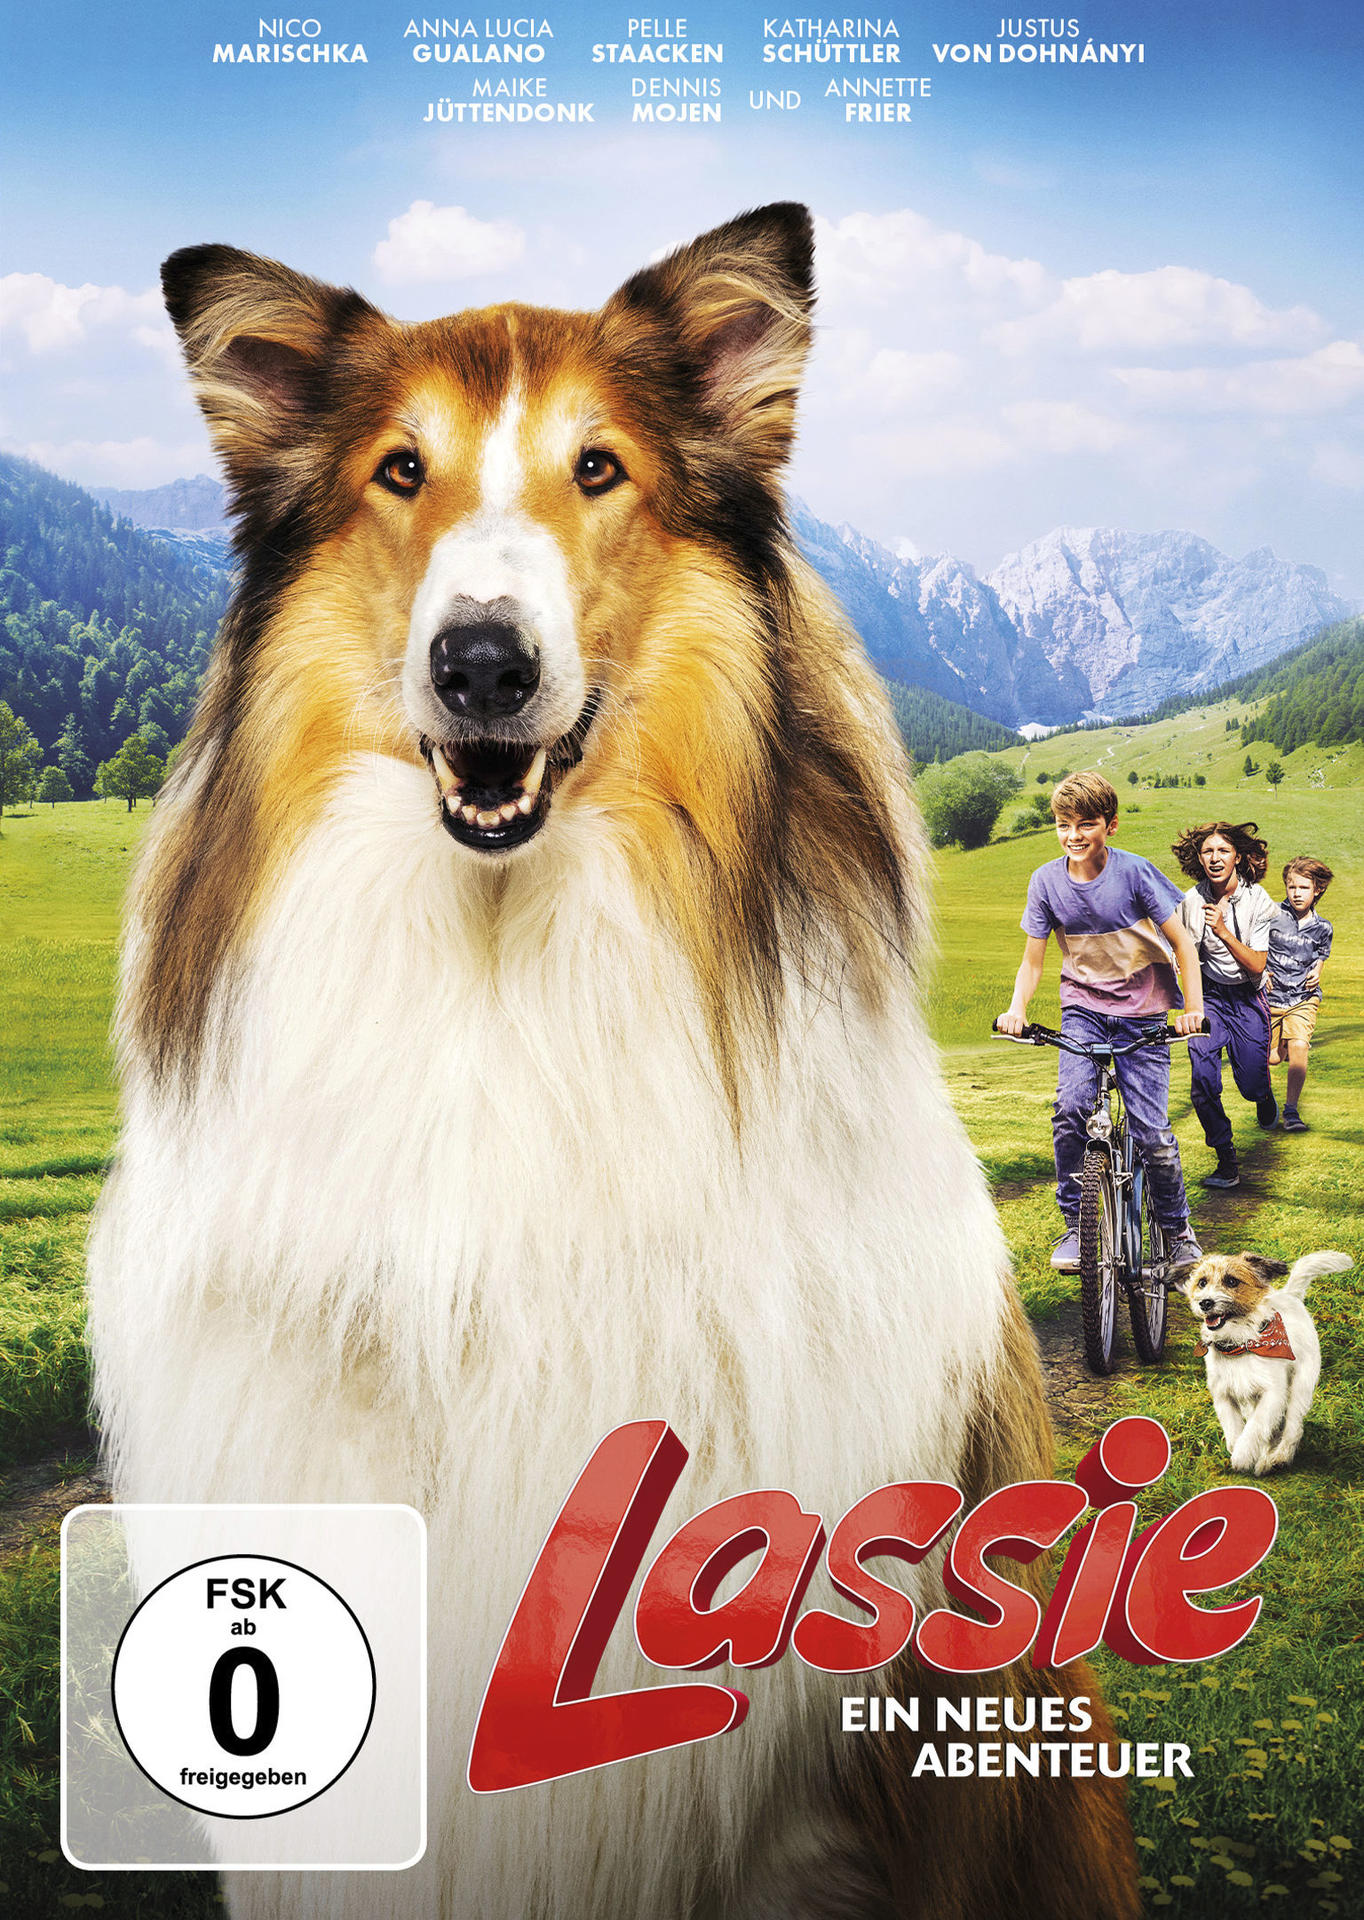 Lassie - Ein neues Abenteuer DVD